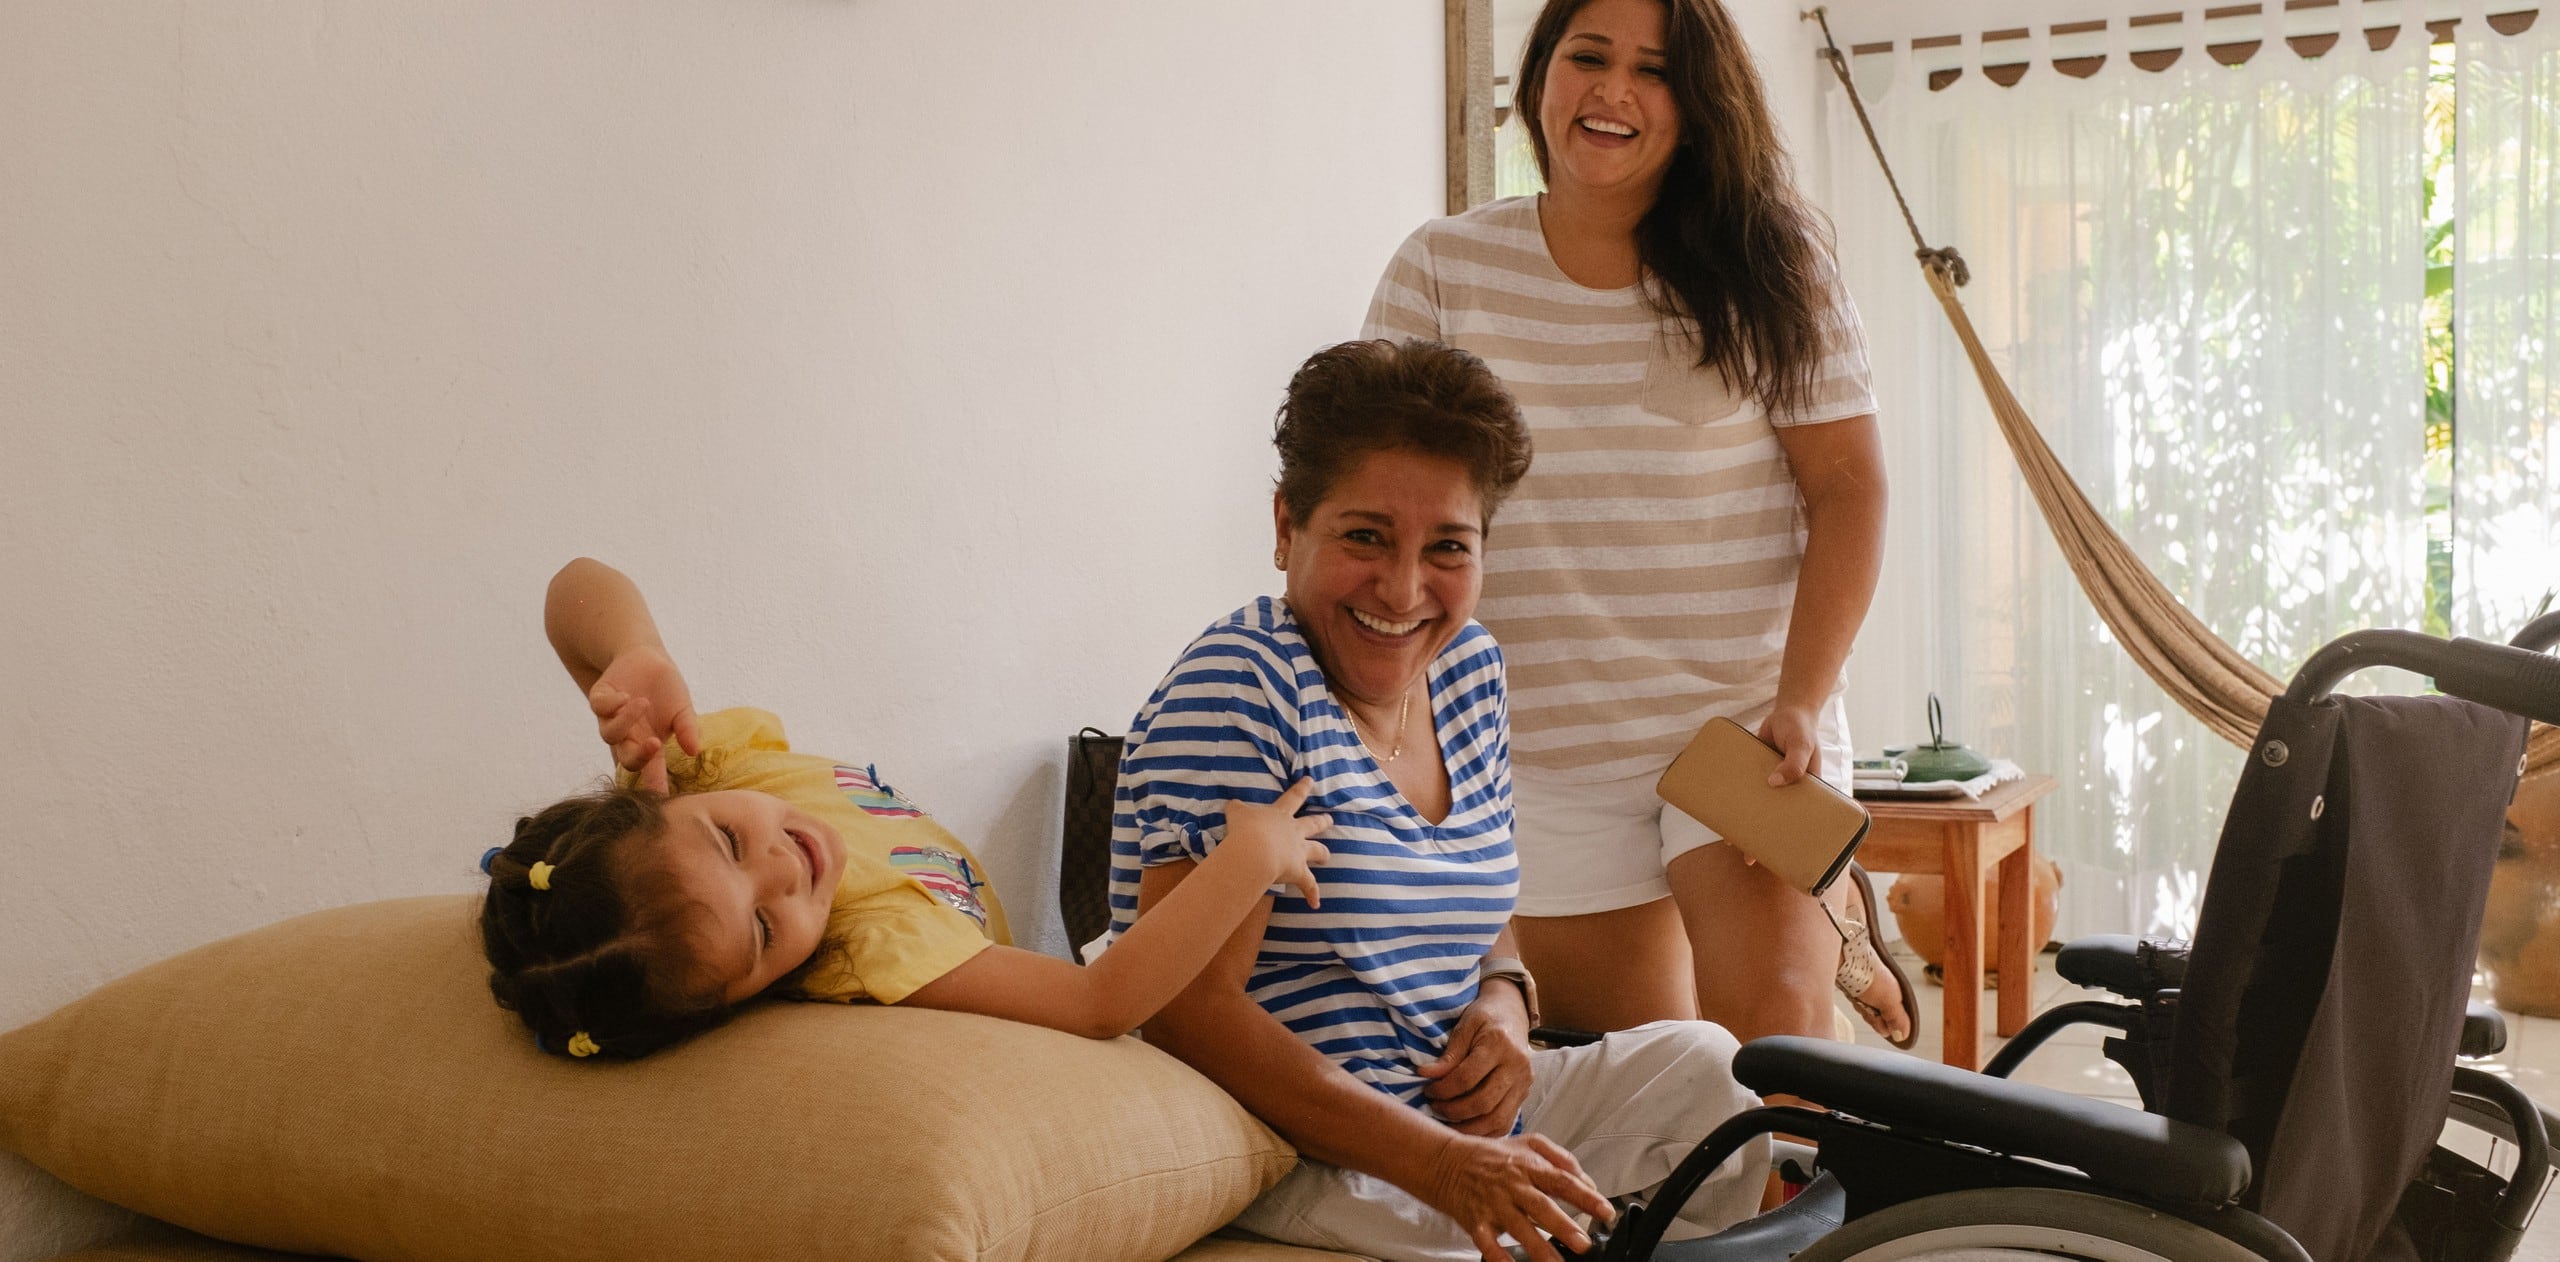 Trois générations d'une famille sourient et rient dans un logement Airbnb accessible. Un fauteuil roulant se trouve devant le membre le plus âgé de la famille.